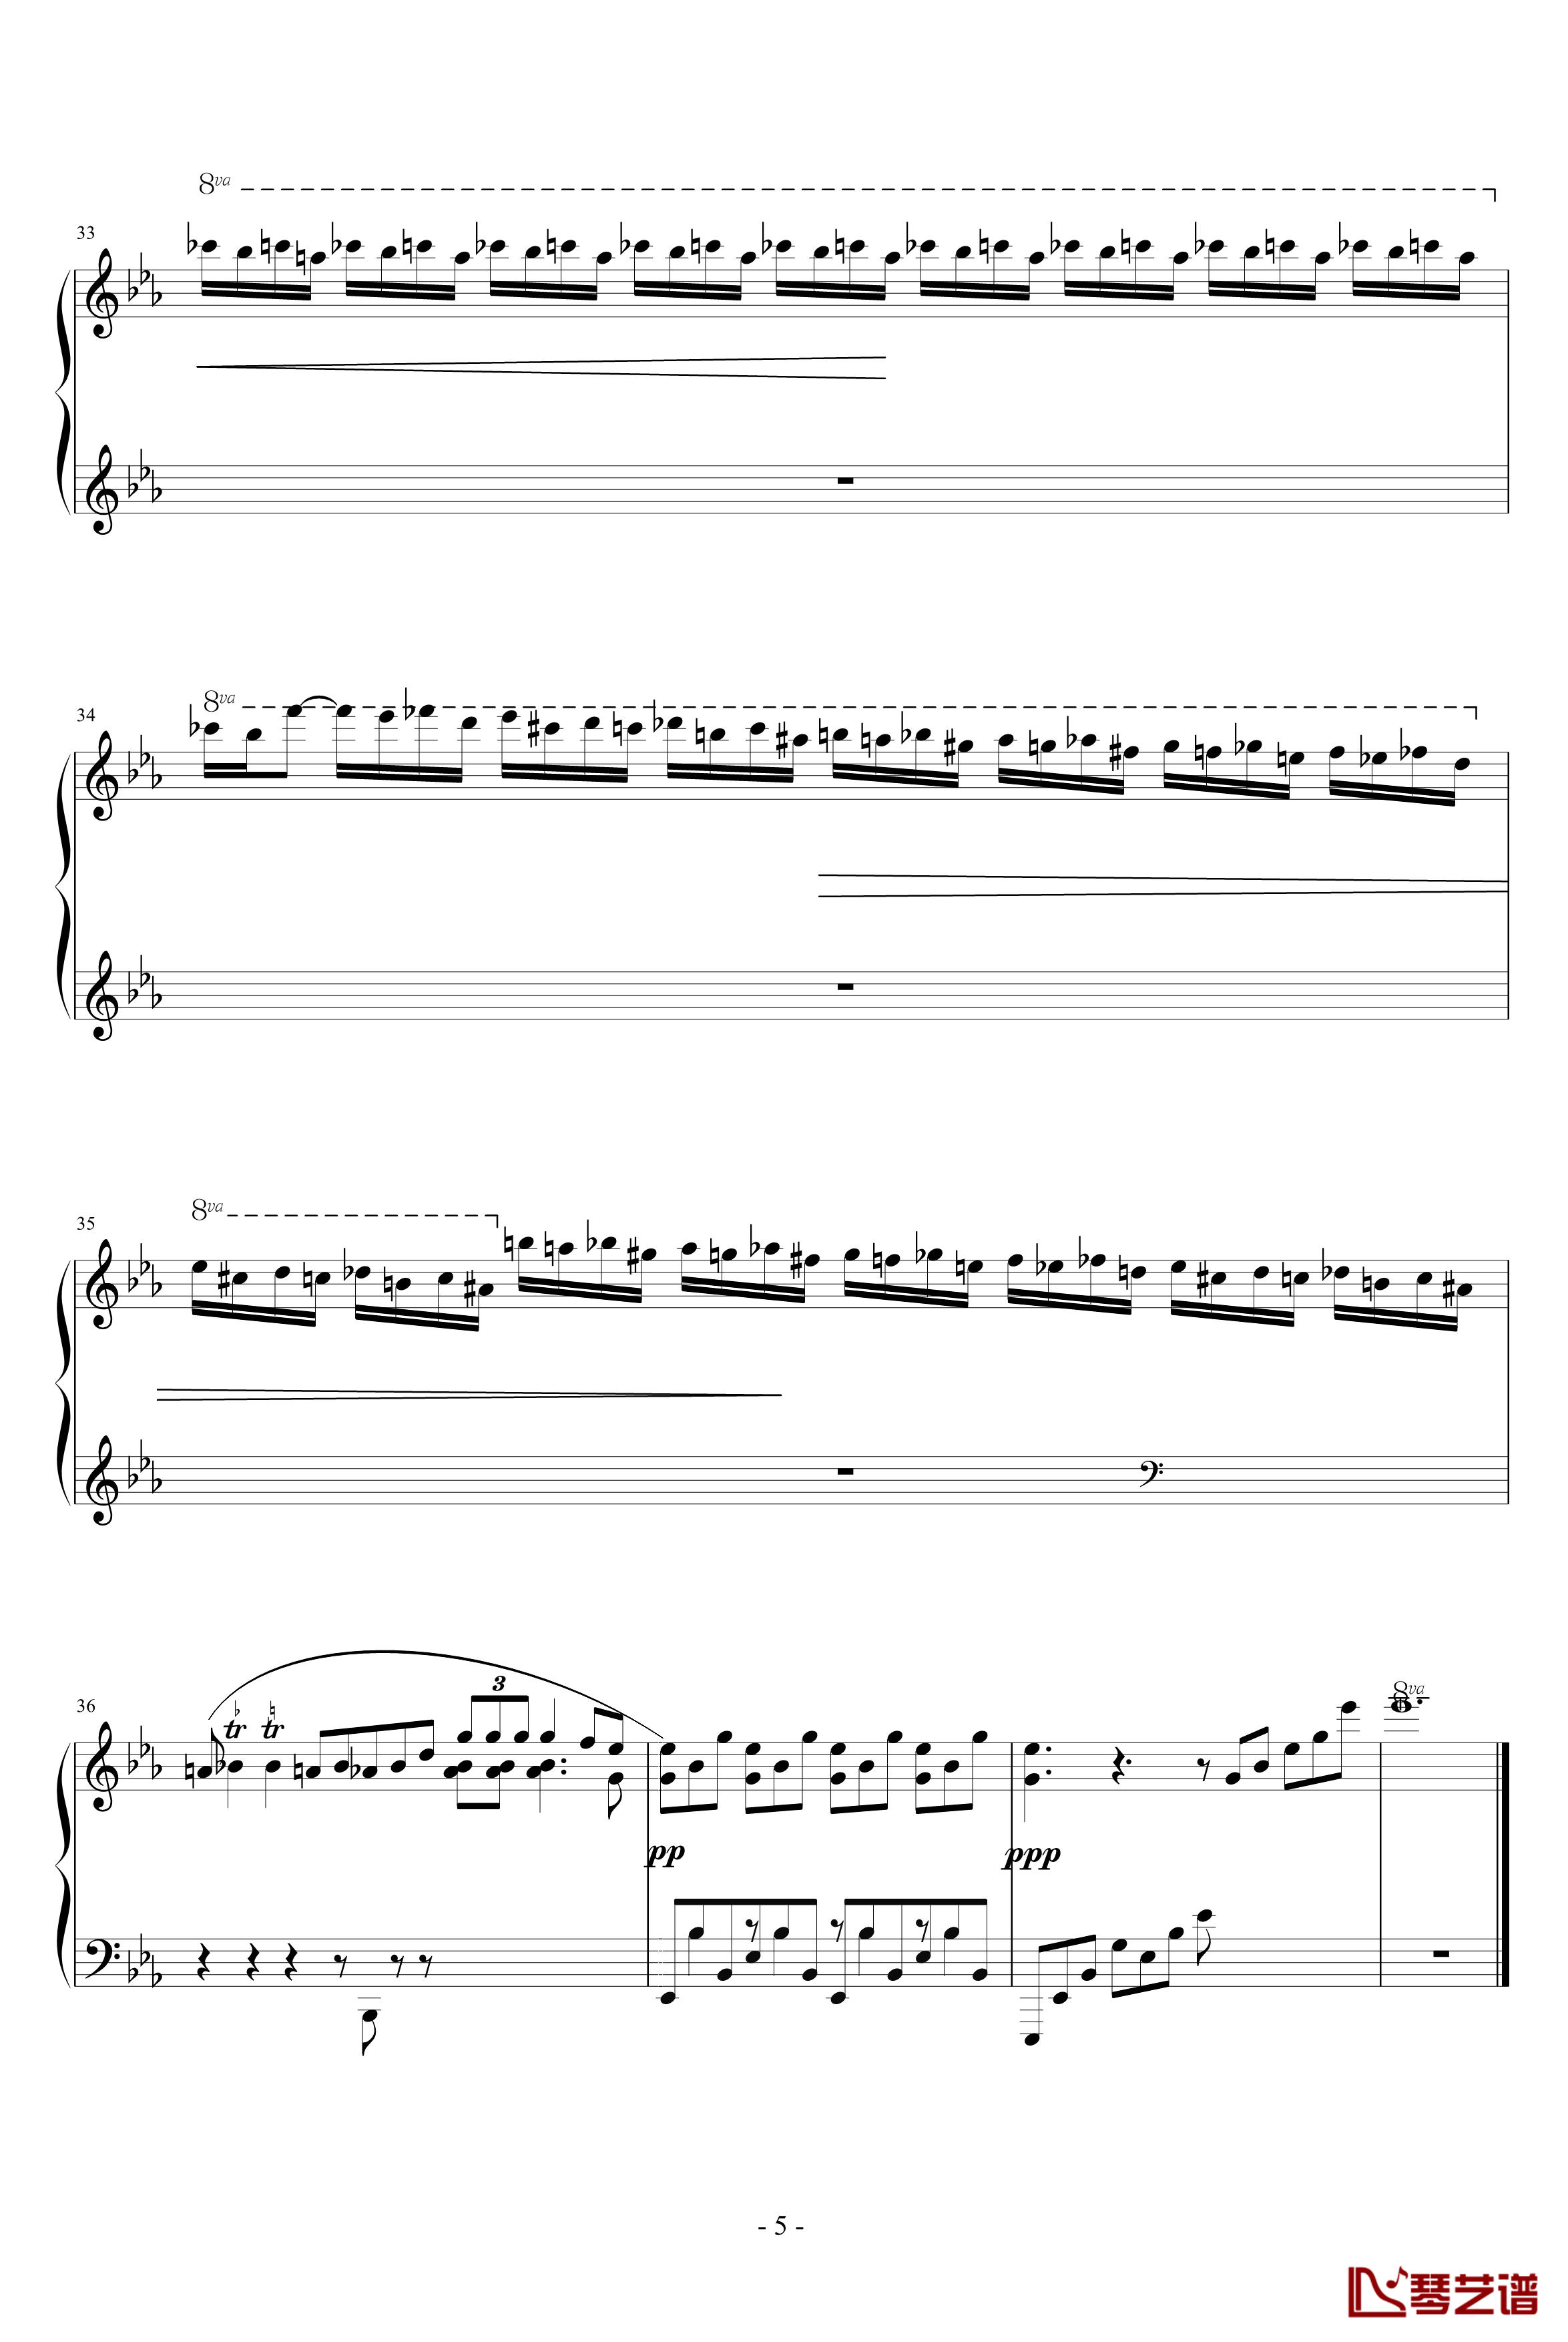 降E大调夜曲钢琴谱-另一个版本-肖邦-chopin5